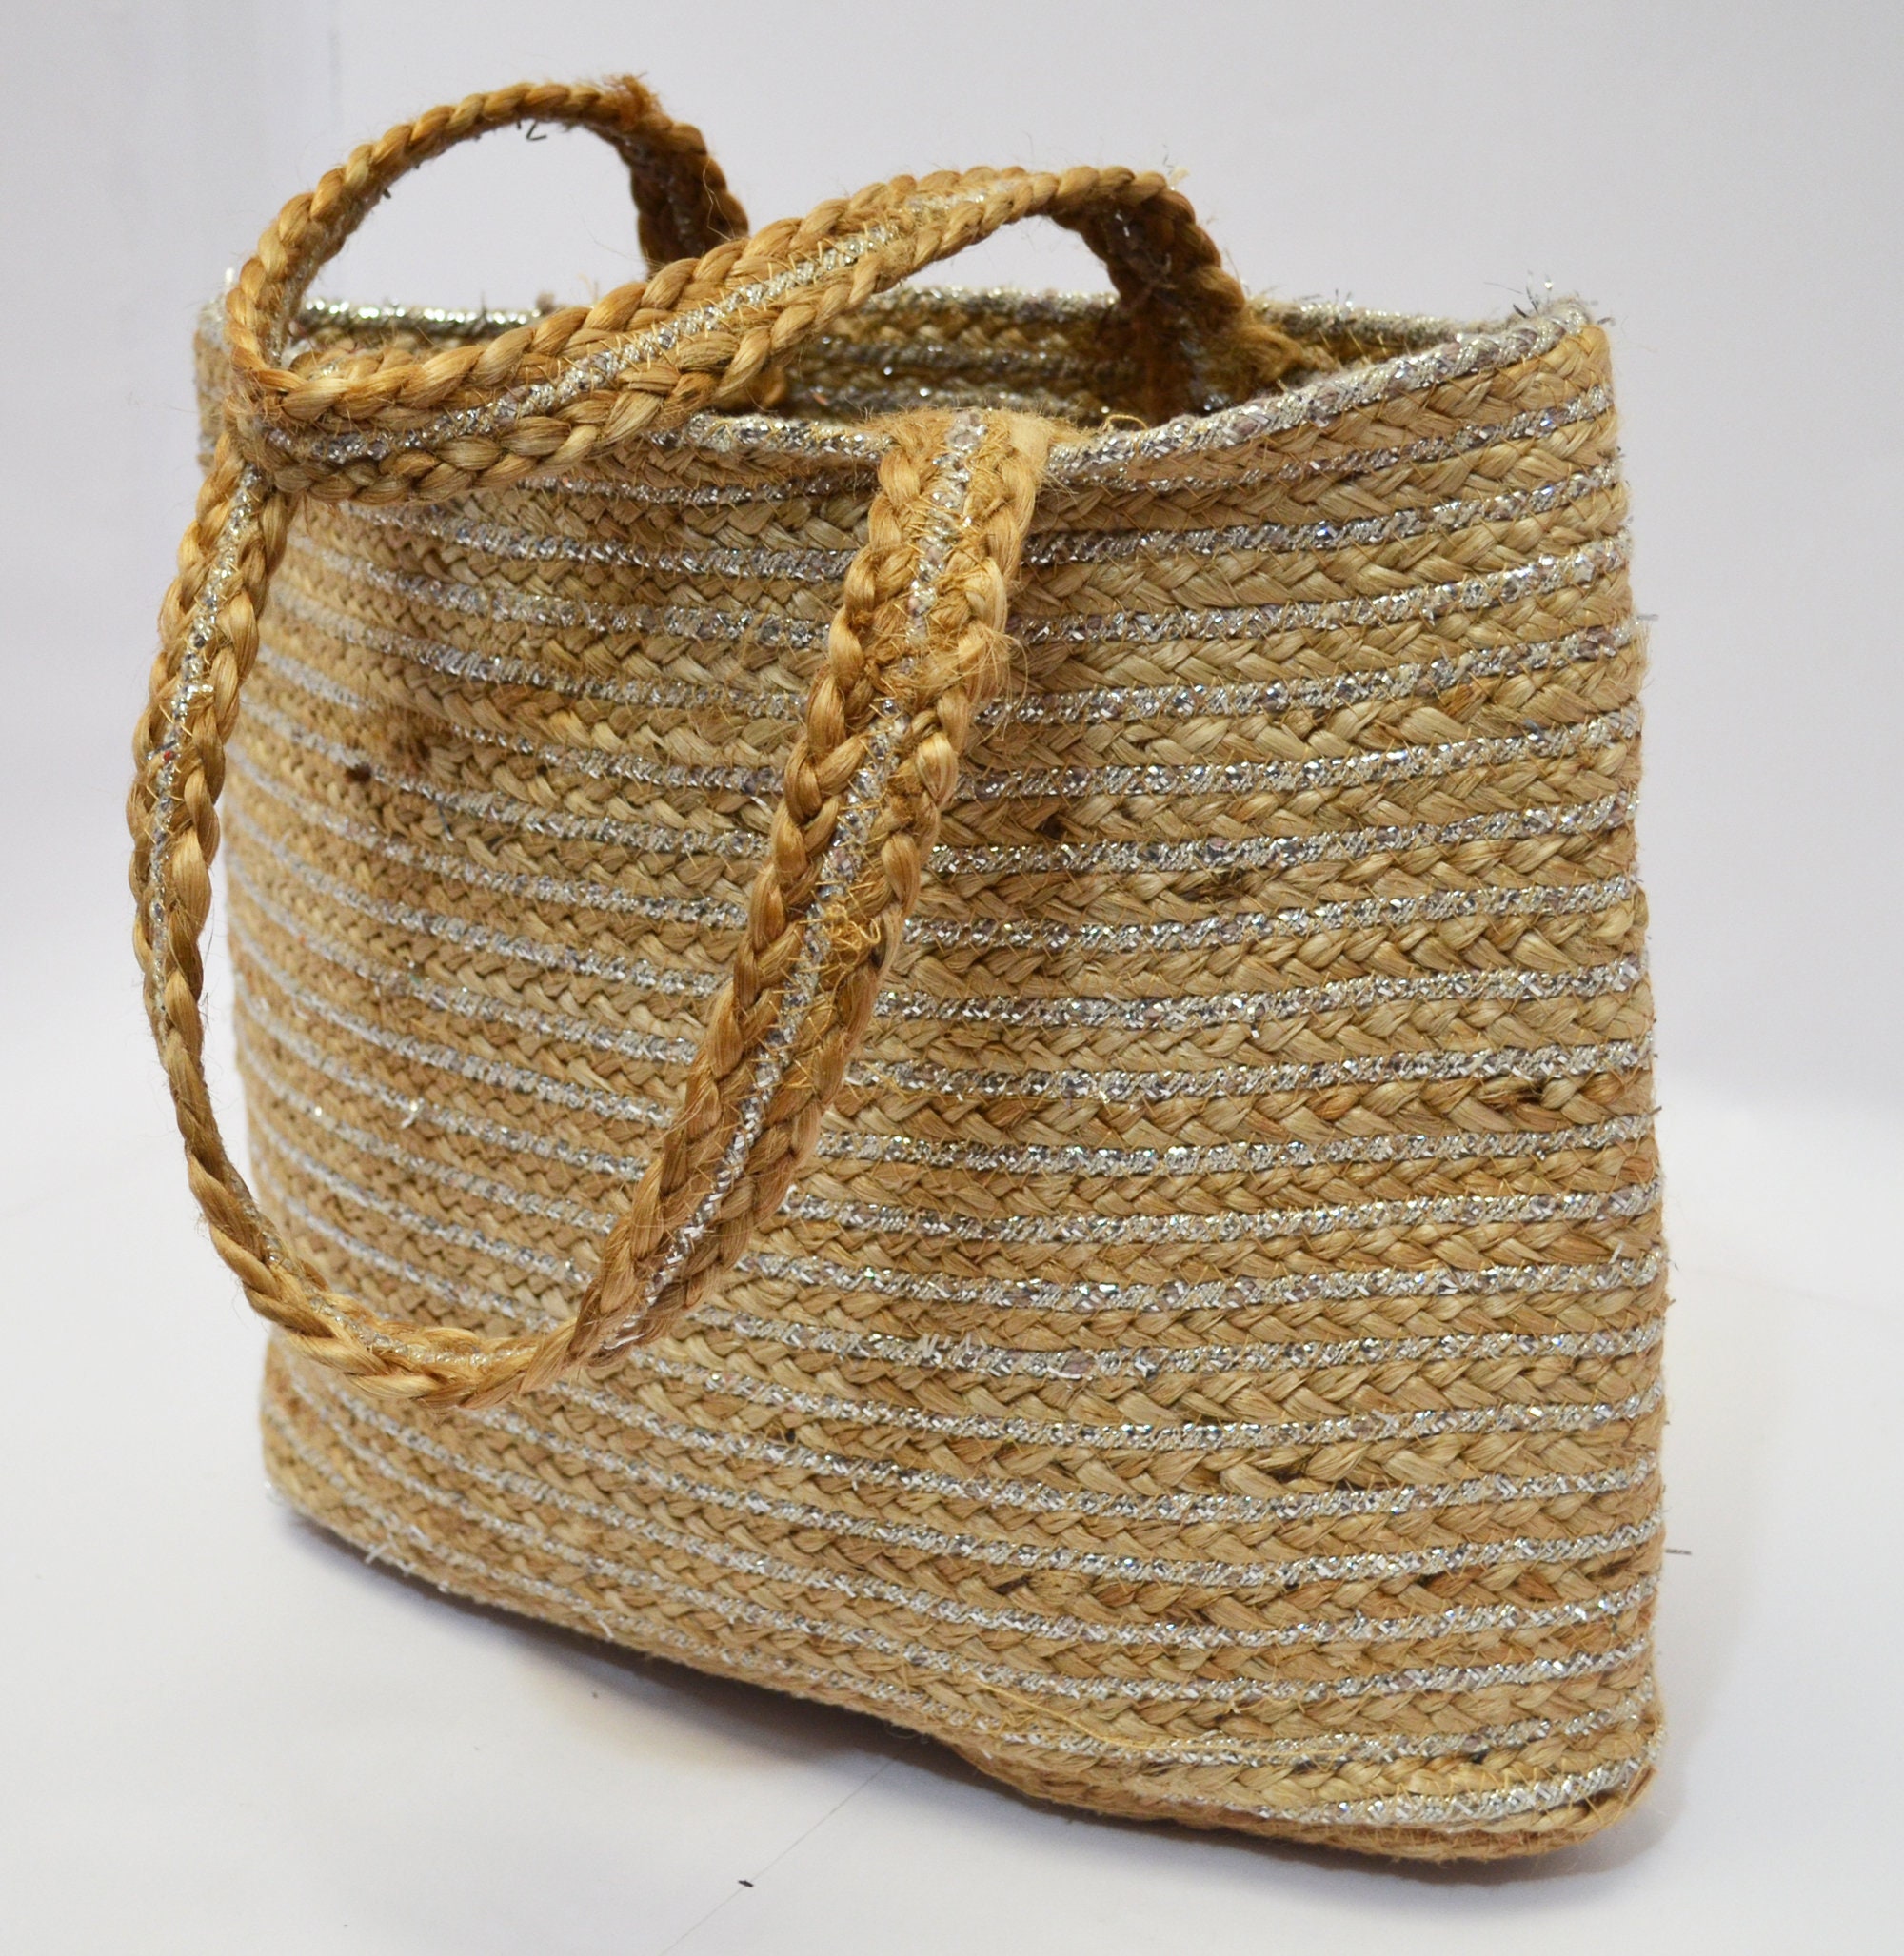 Buy Jute Shoulder Bags for Women and Girls | Trendy Bags | Fashionable Tote  | Office Bags | Jute Handbag | Jute Bag with Zip | Reusable Bags | Printed Jute  Bags | Natural at Amazon.in